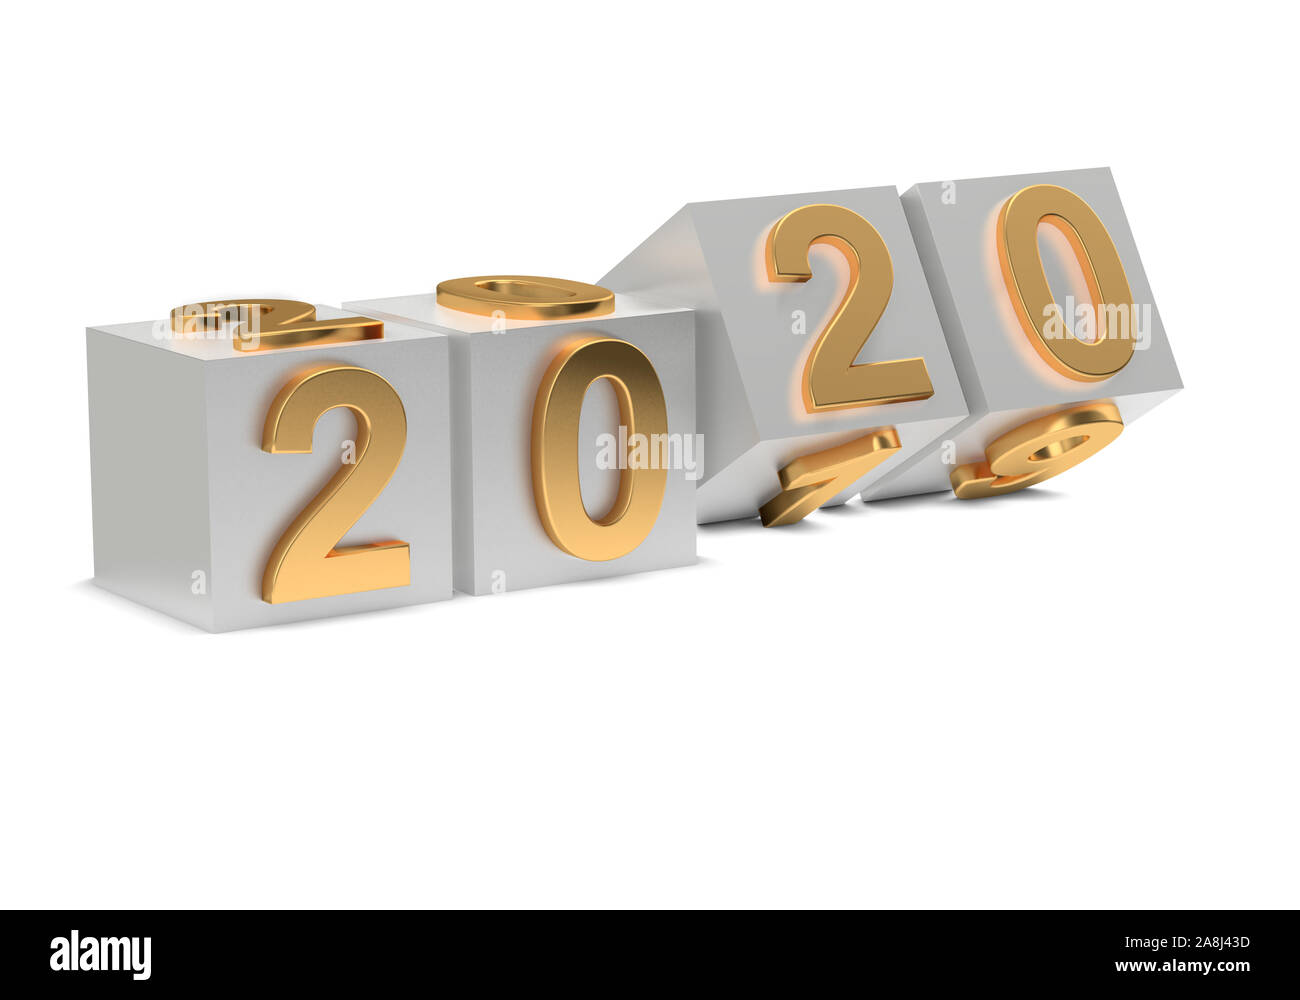 Abstraktion des neuen Jahres. 2020 Anzahl Flips auf Würfel. 3D-Rendering Stockfoto